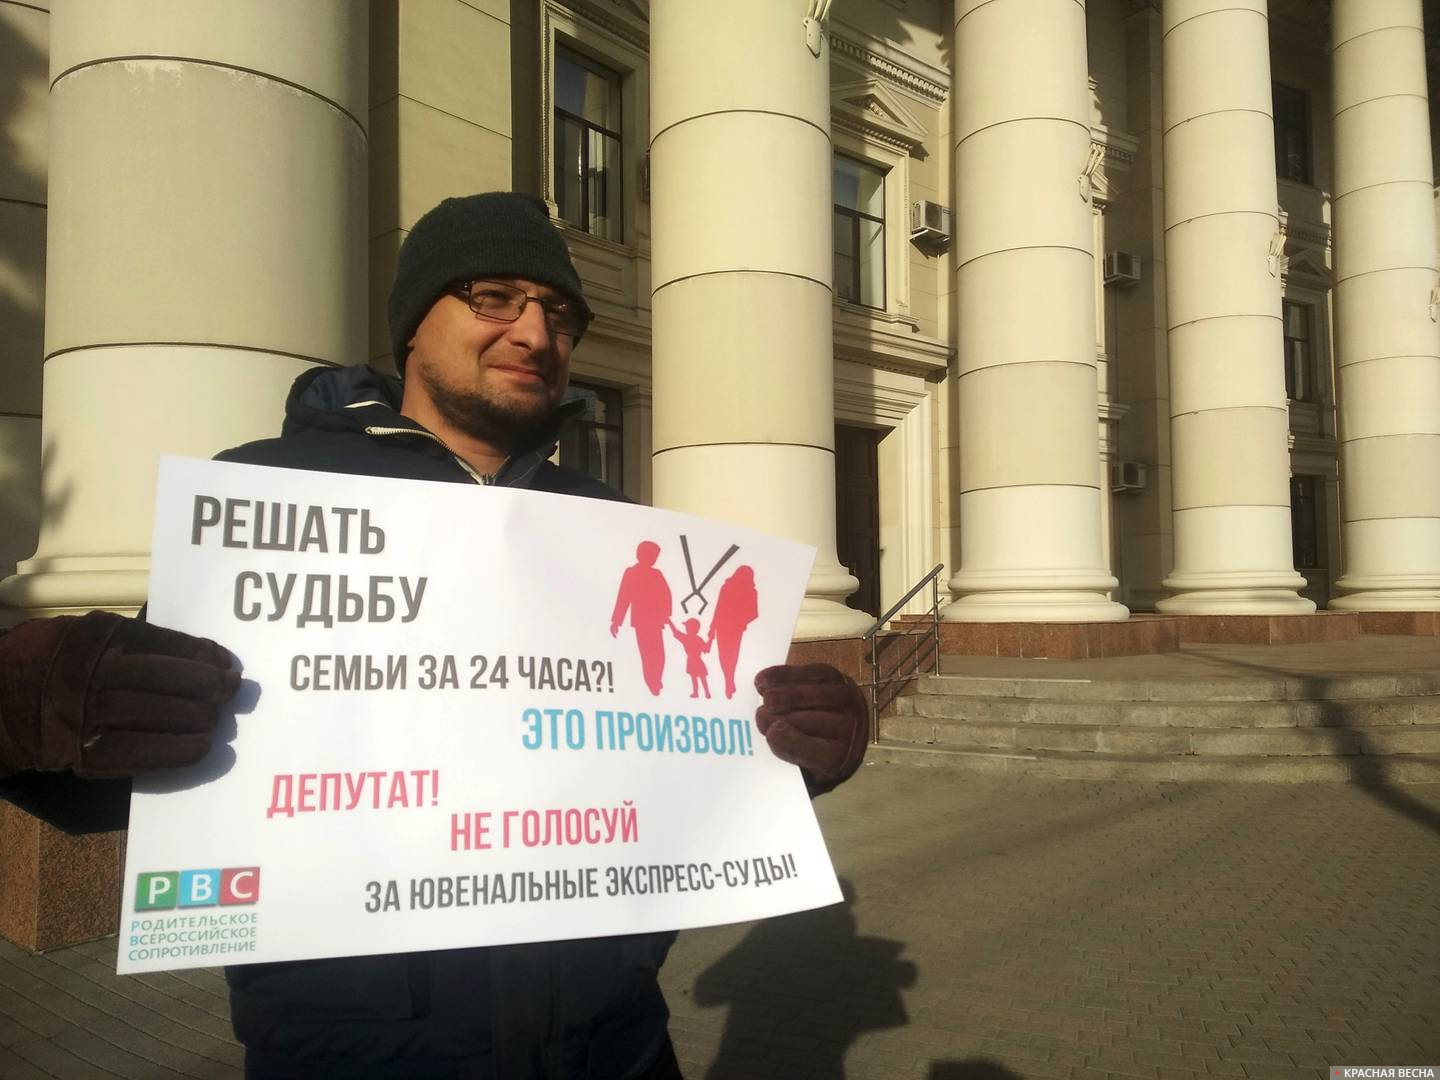 Одиночный пикет против законопроекта Клишаса-Крашенинникова в Волгограде